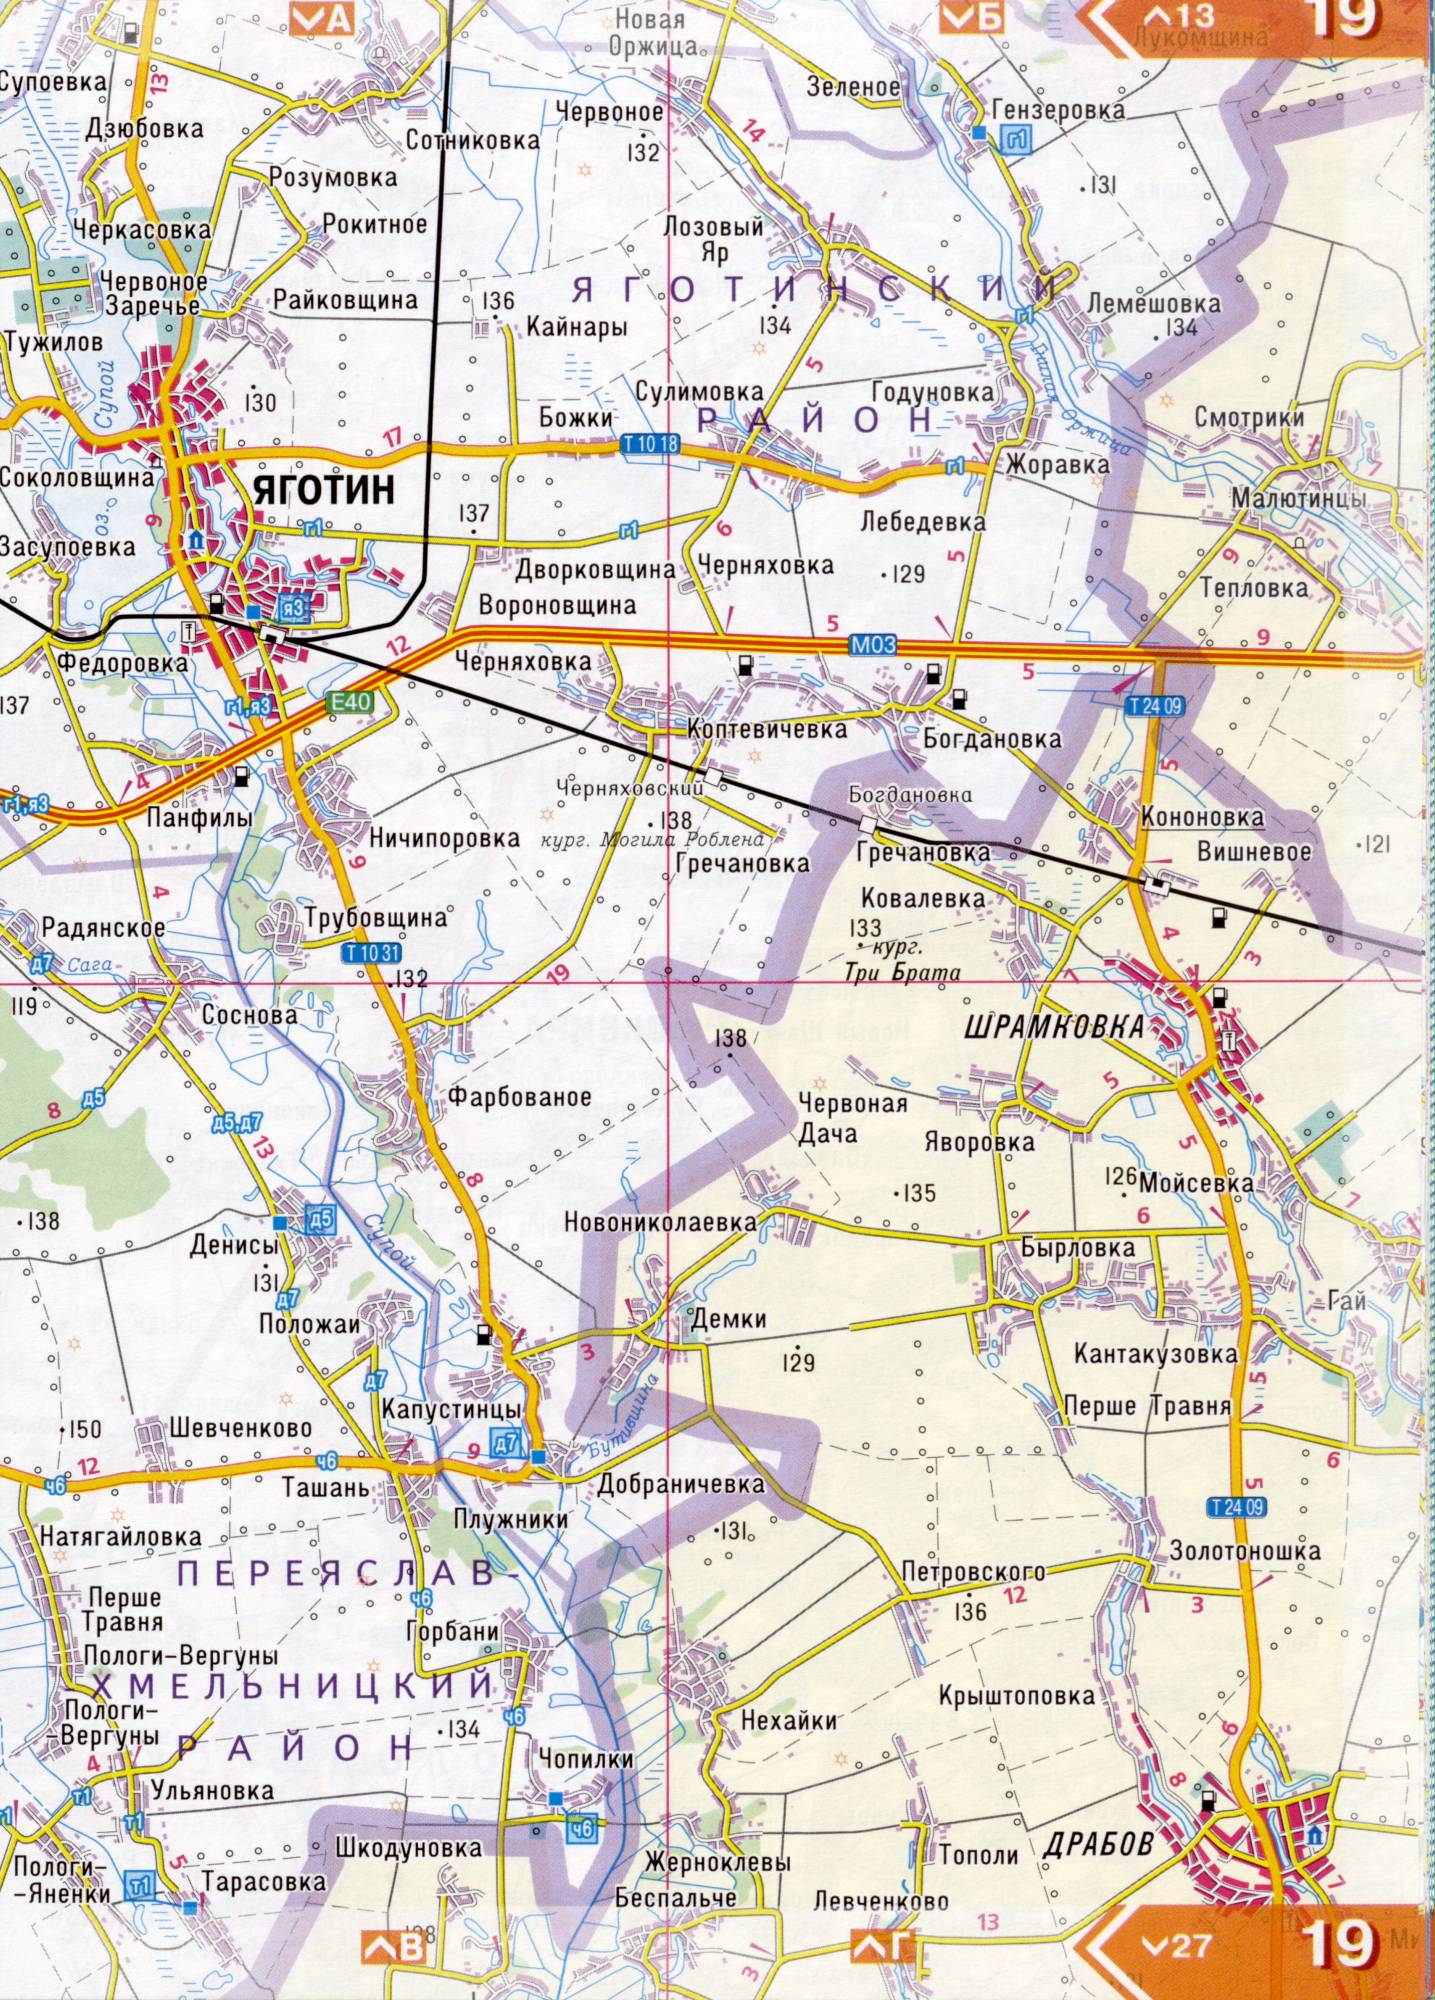 Atlas von der Region Kiew. Eine detaillierte Karte der Region Kiew von dem Atlas von Autobahnen. Kiewer Gebiet auf einer detaillierten Karte Maßstab 1cm = 3km. Frei, F3 - Yahotyn